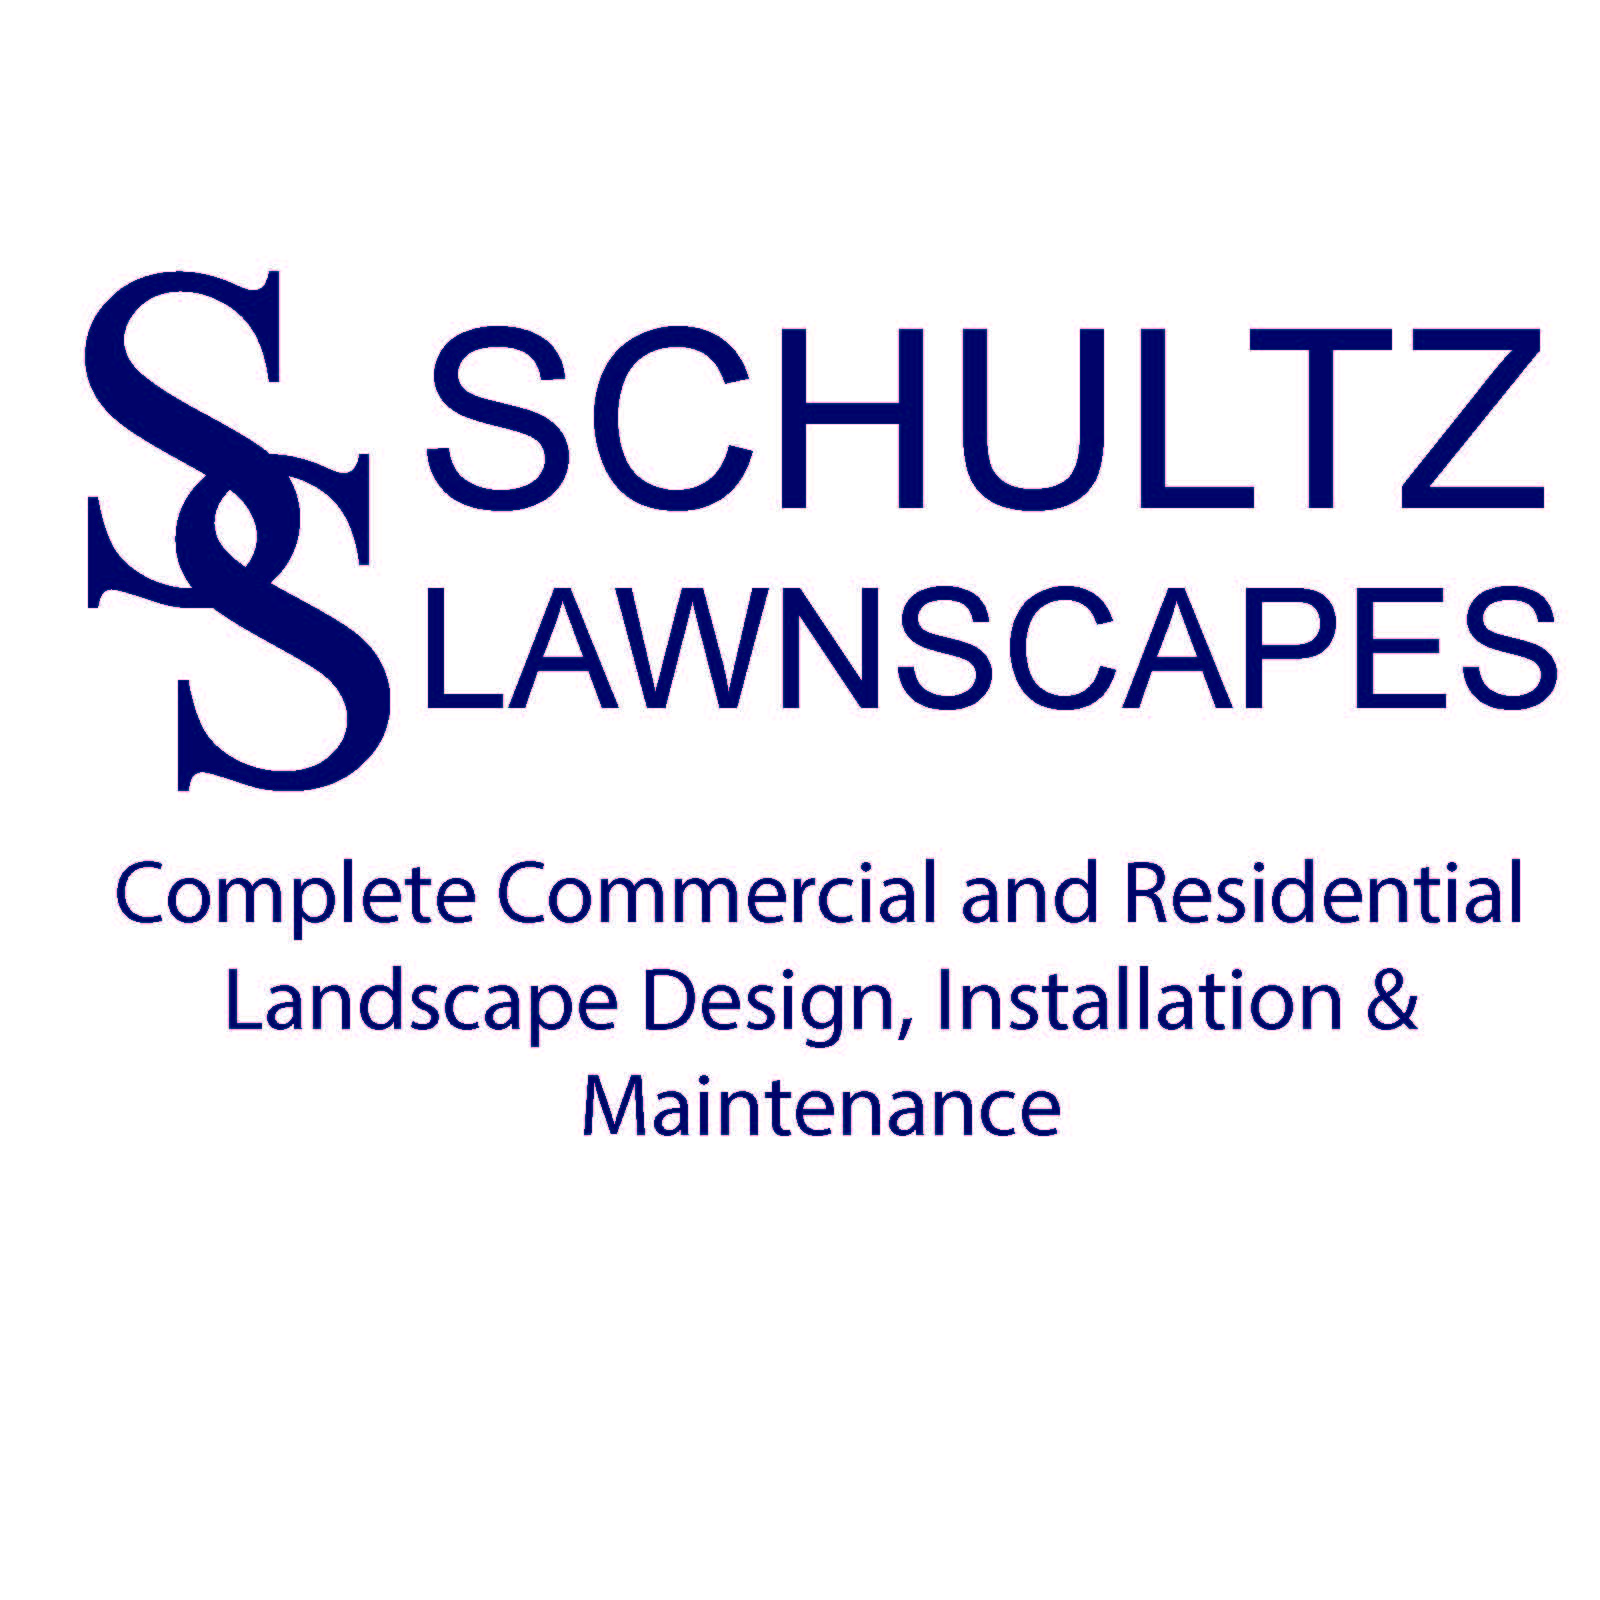 Schultz Lawnscapes